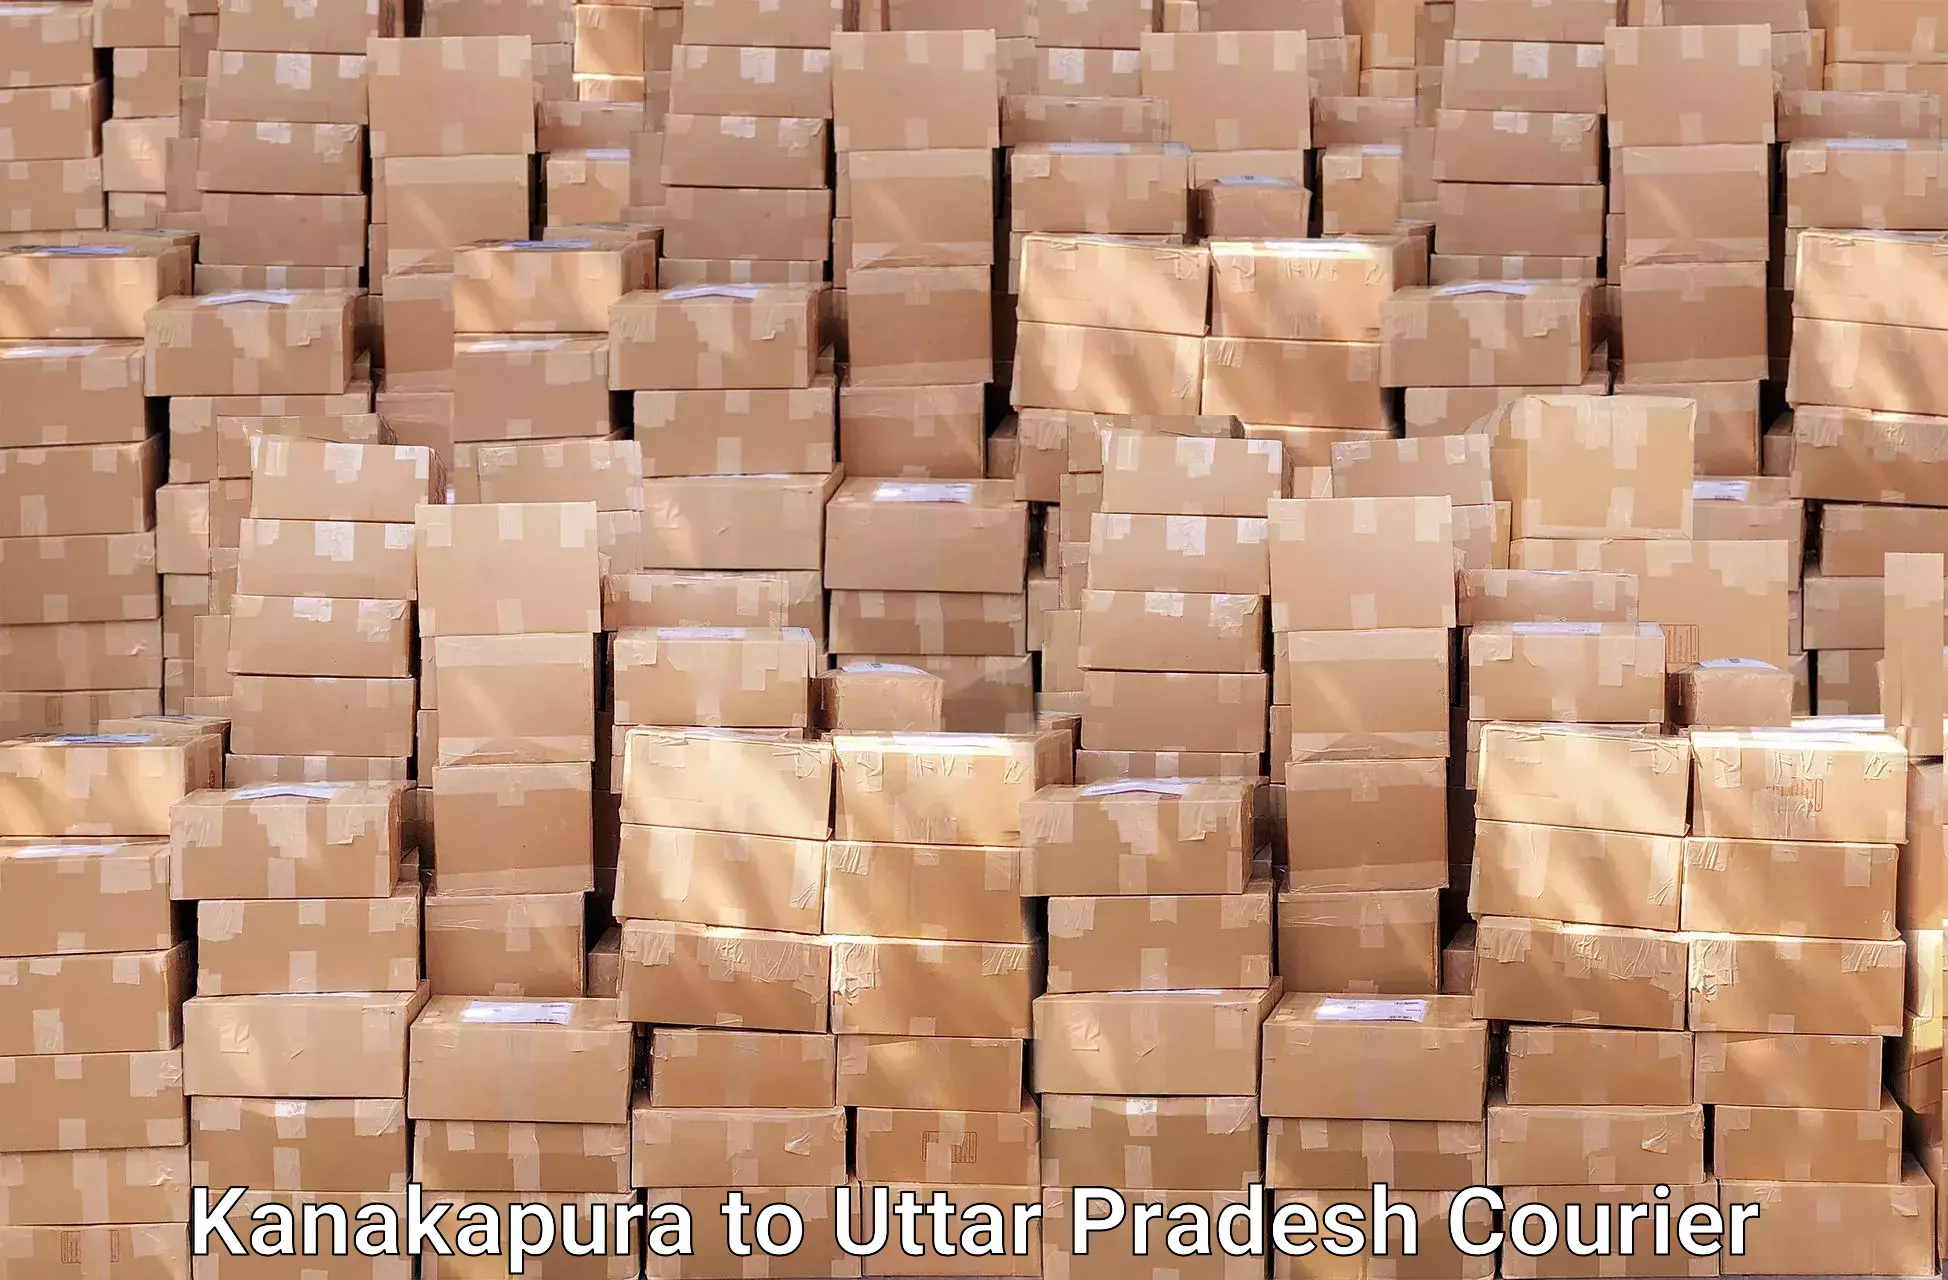 Efficient relocation services Kanakapura to Uttar Pradesh